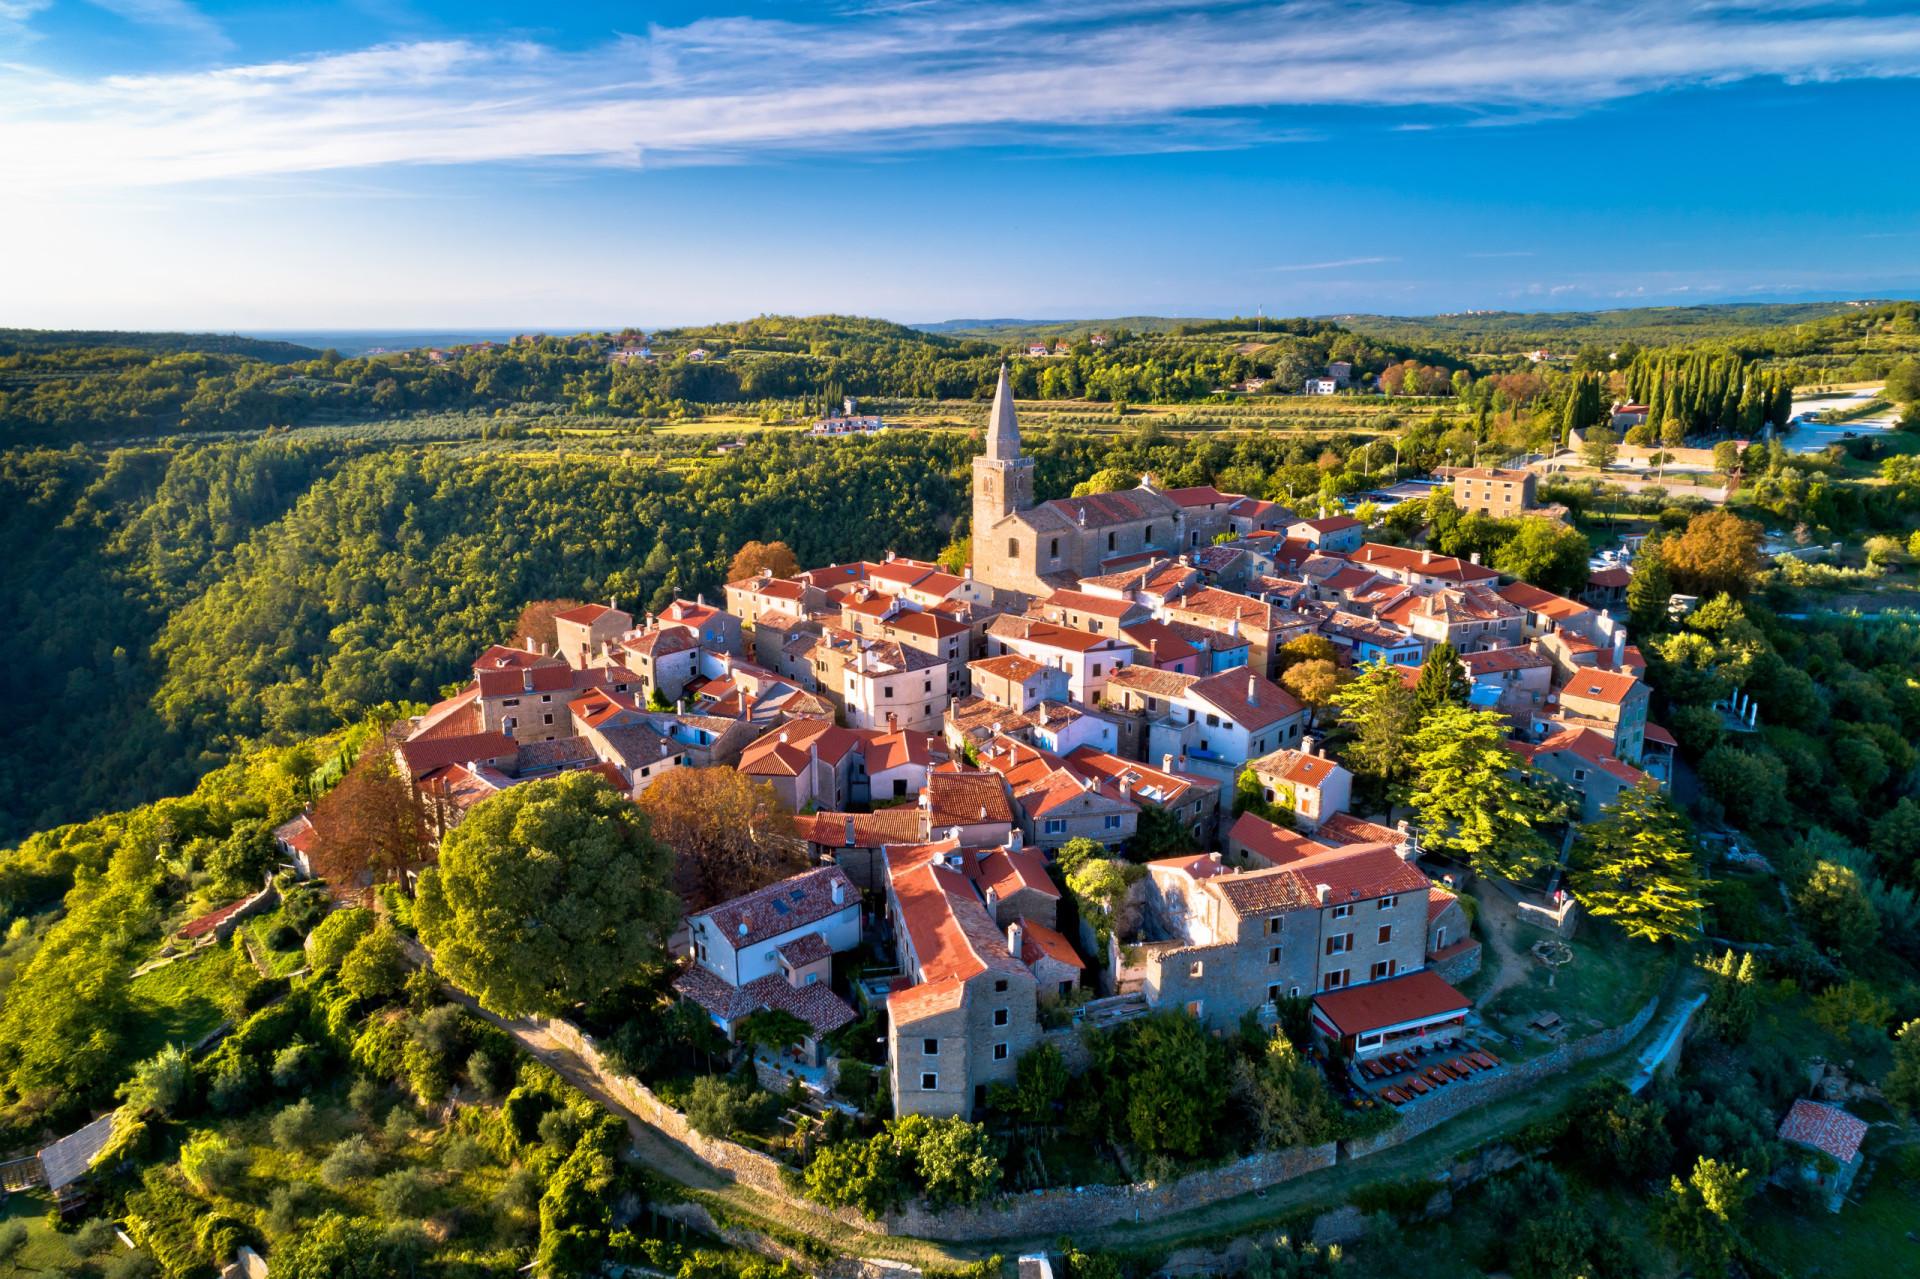 <p>La péninsule d'Istrie, en Croatie, regorge de villages pittoresques au sommet des collines, mais c'est Groznjan qui séduit le plus. Dans les années 1950 et au début des années 1960, cette destination idyllique abritait une communauté créative d'artistes, d'écrivains et de musiciens. Aujourd'hui encore, Groznjan offre l'un des plus beaux paysages du pays.</p><p><a href="https://www.msn.com/fr-fr/community/channel/vid-7xx8mnucu55yw63we9va2gwr7uihbxwc68fxqp25x6tg4ftibpra?cvid=94631541bc0f4f89bfd59158d696ad7e">Suivez-nous et accédez tous les jours à du contenu exclusif</a></p>